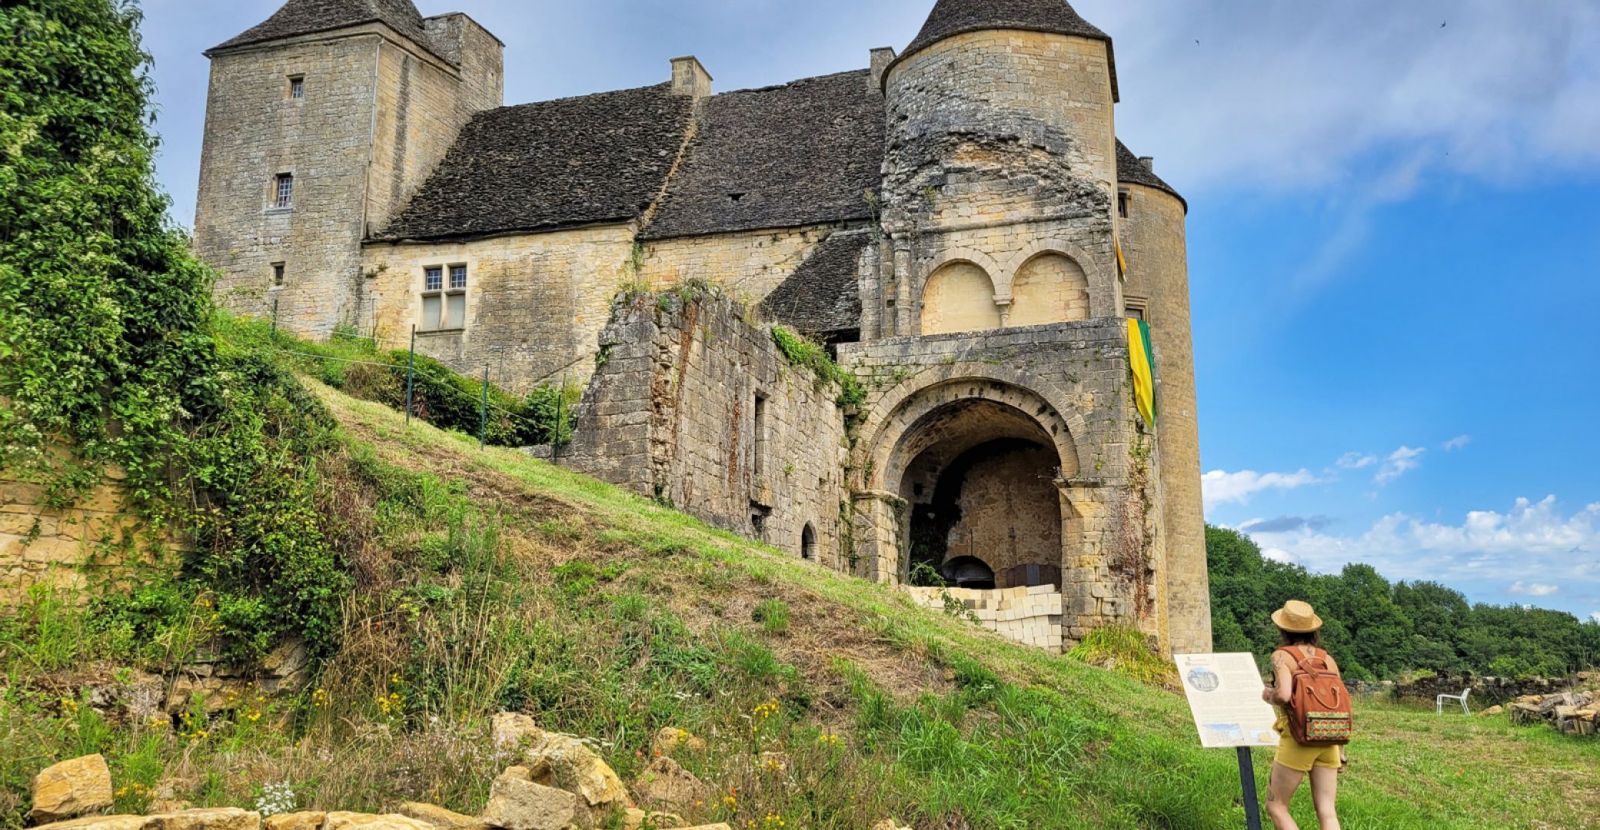 The Château de Salignac